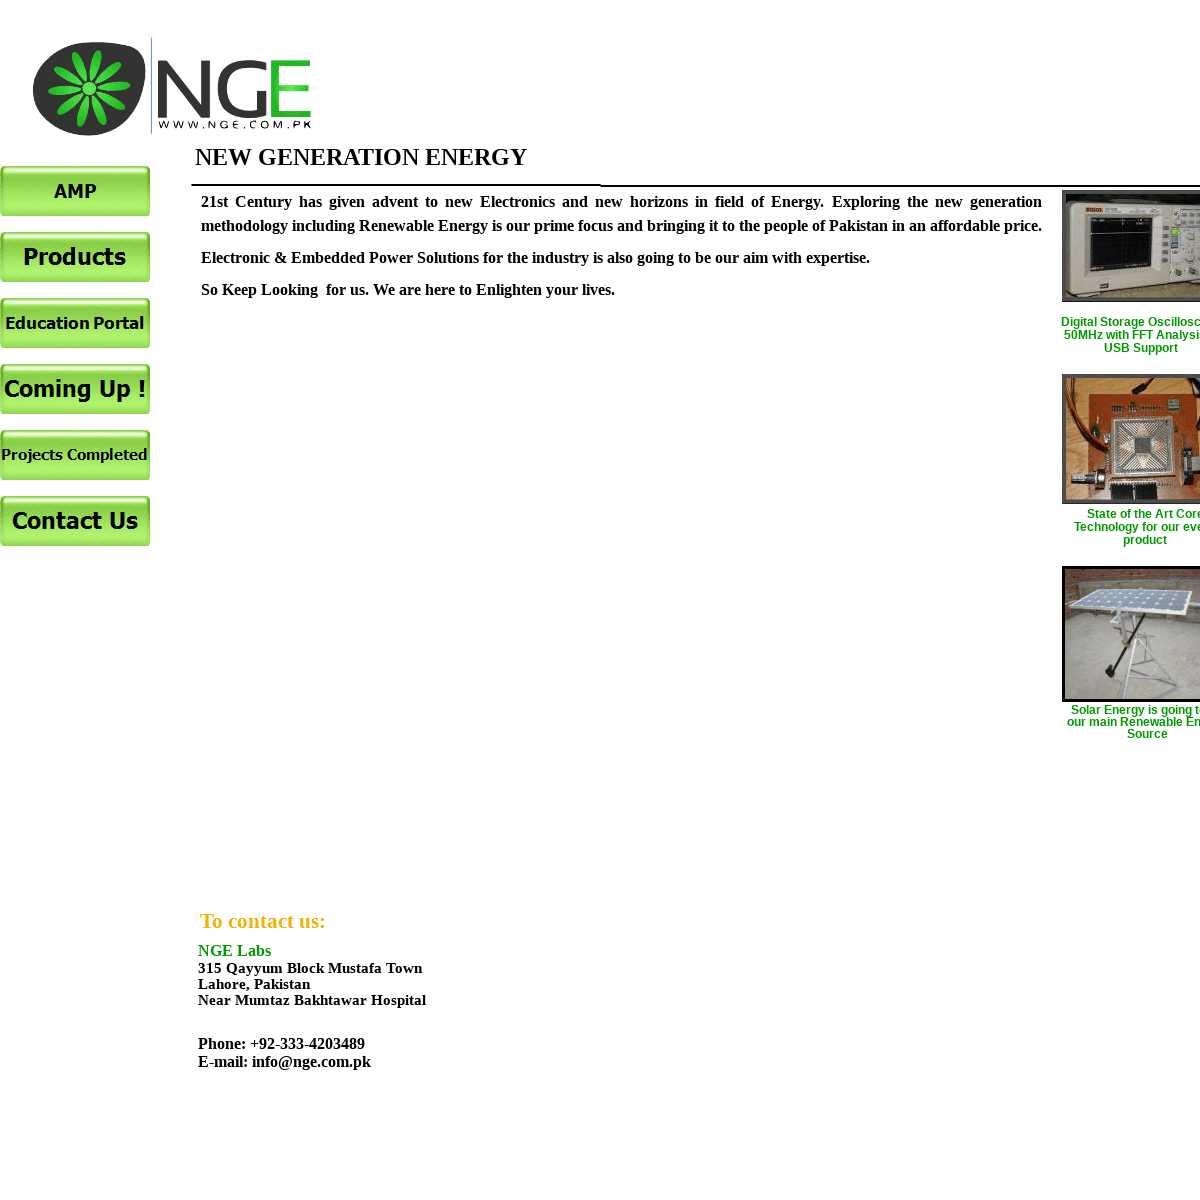 A complete backup of nge.com.pk